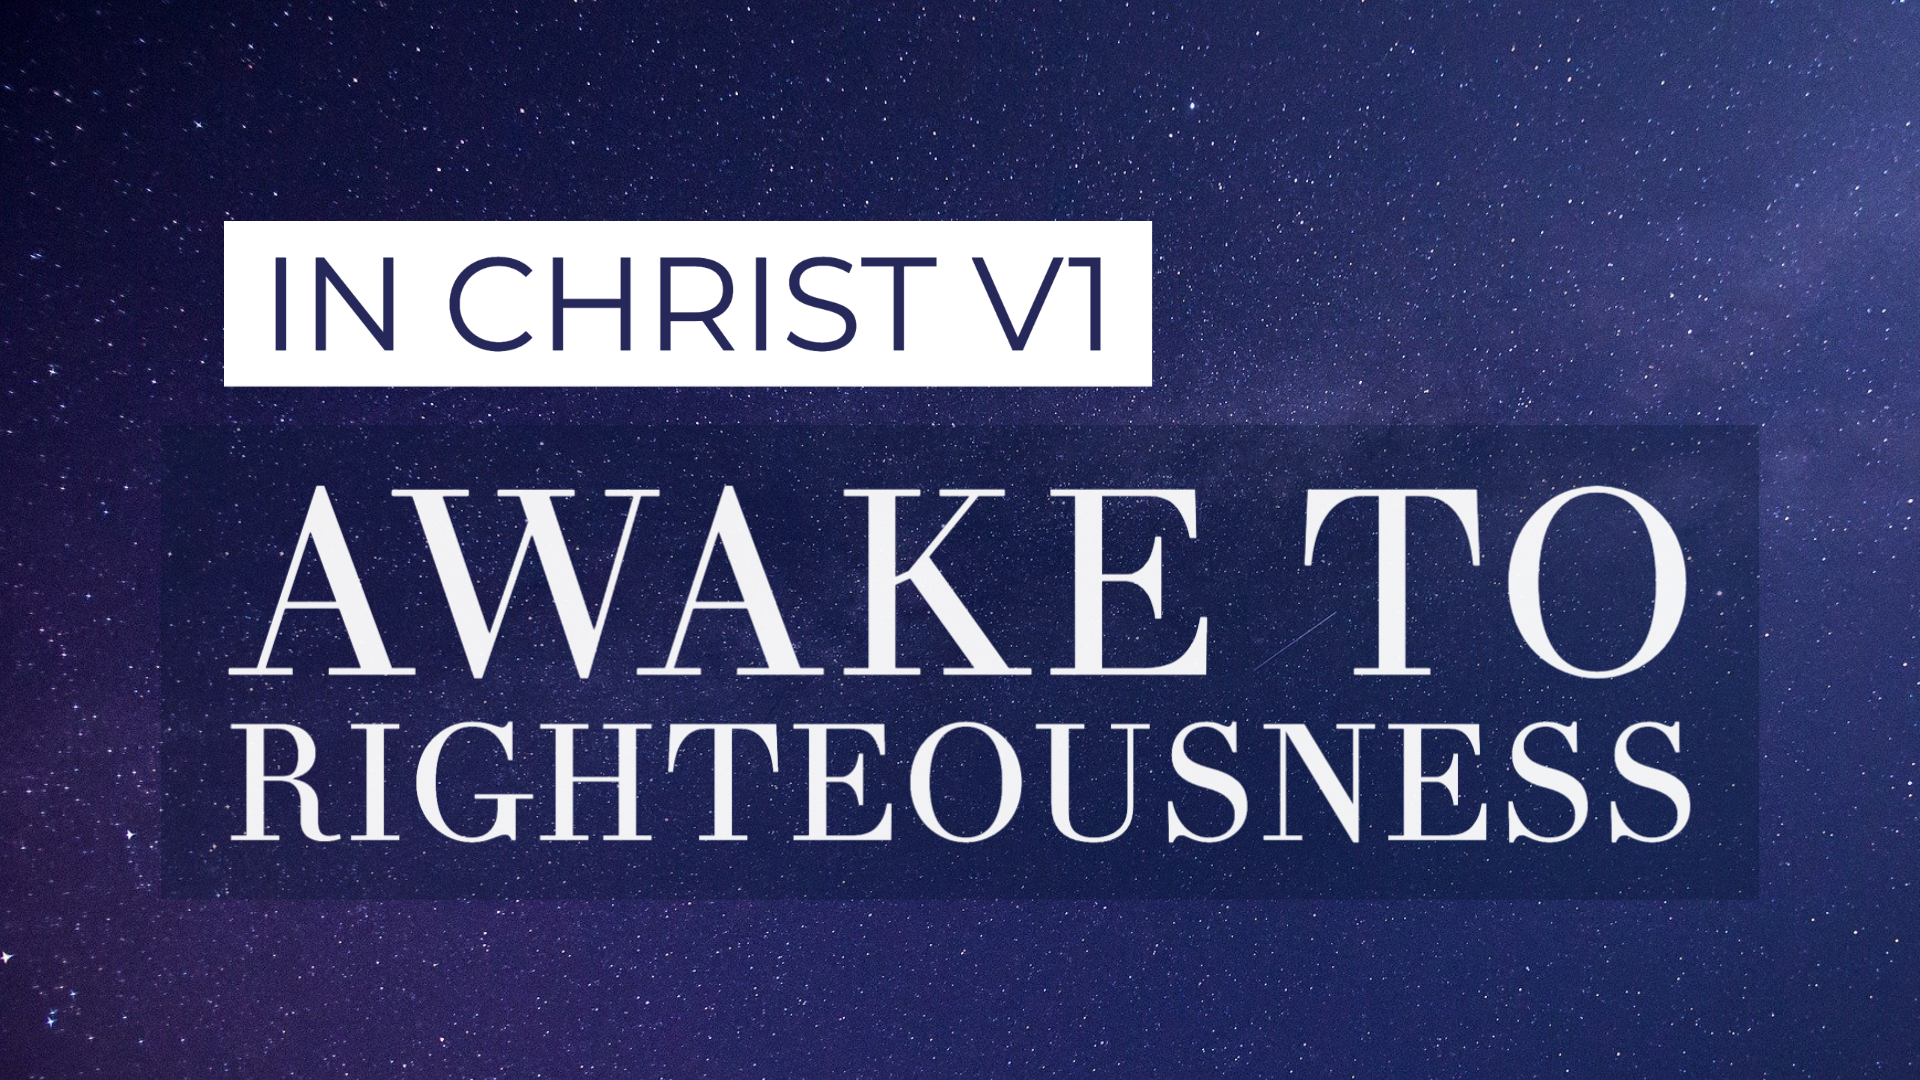 Awake to Righteousness